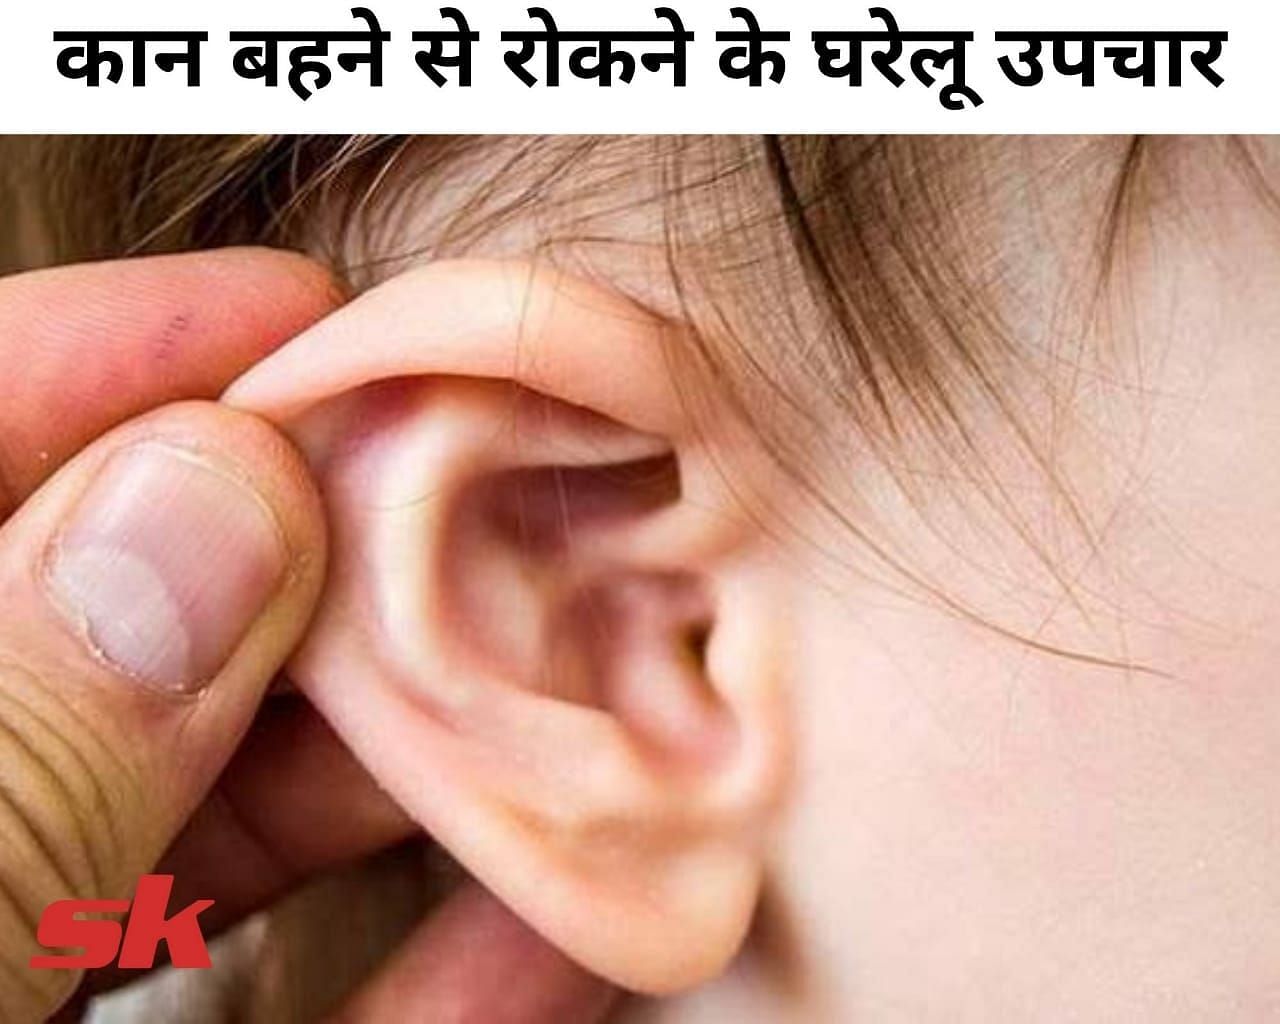 कान बहने से रोकने के घरेलू उपचार (फोटो - sportskeedaहिंदी)